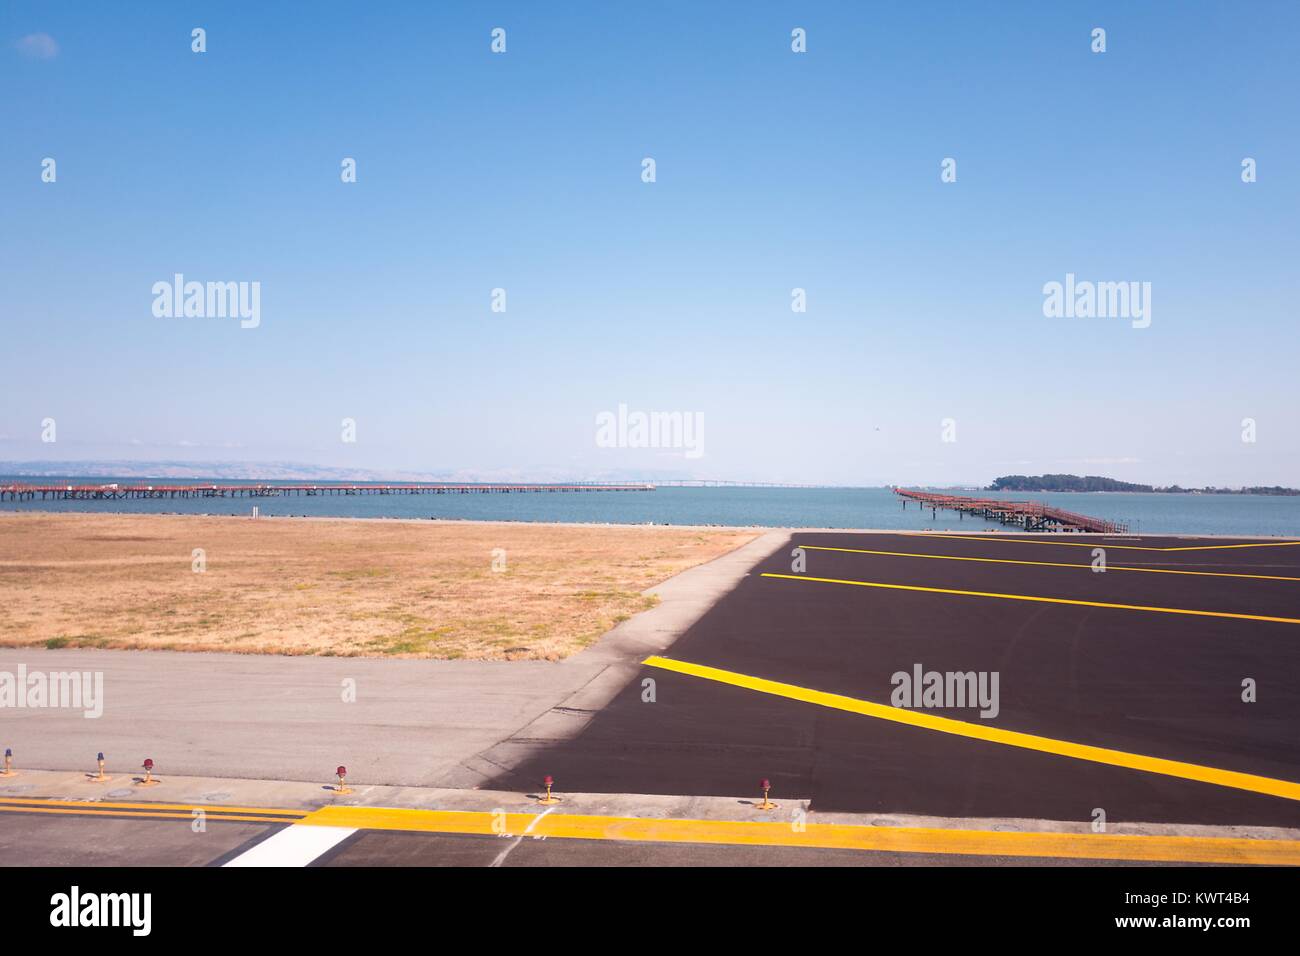 Base della pista, con la Baia di San Francisco visibile, all'Aeroporto Internazionale di San Francisco (SFO), San Francisco, California, 13 settembre 2017. Foto Stock